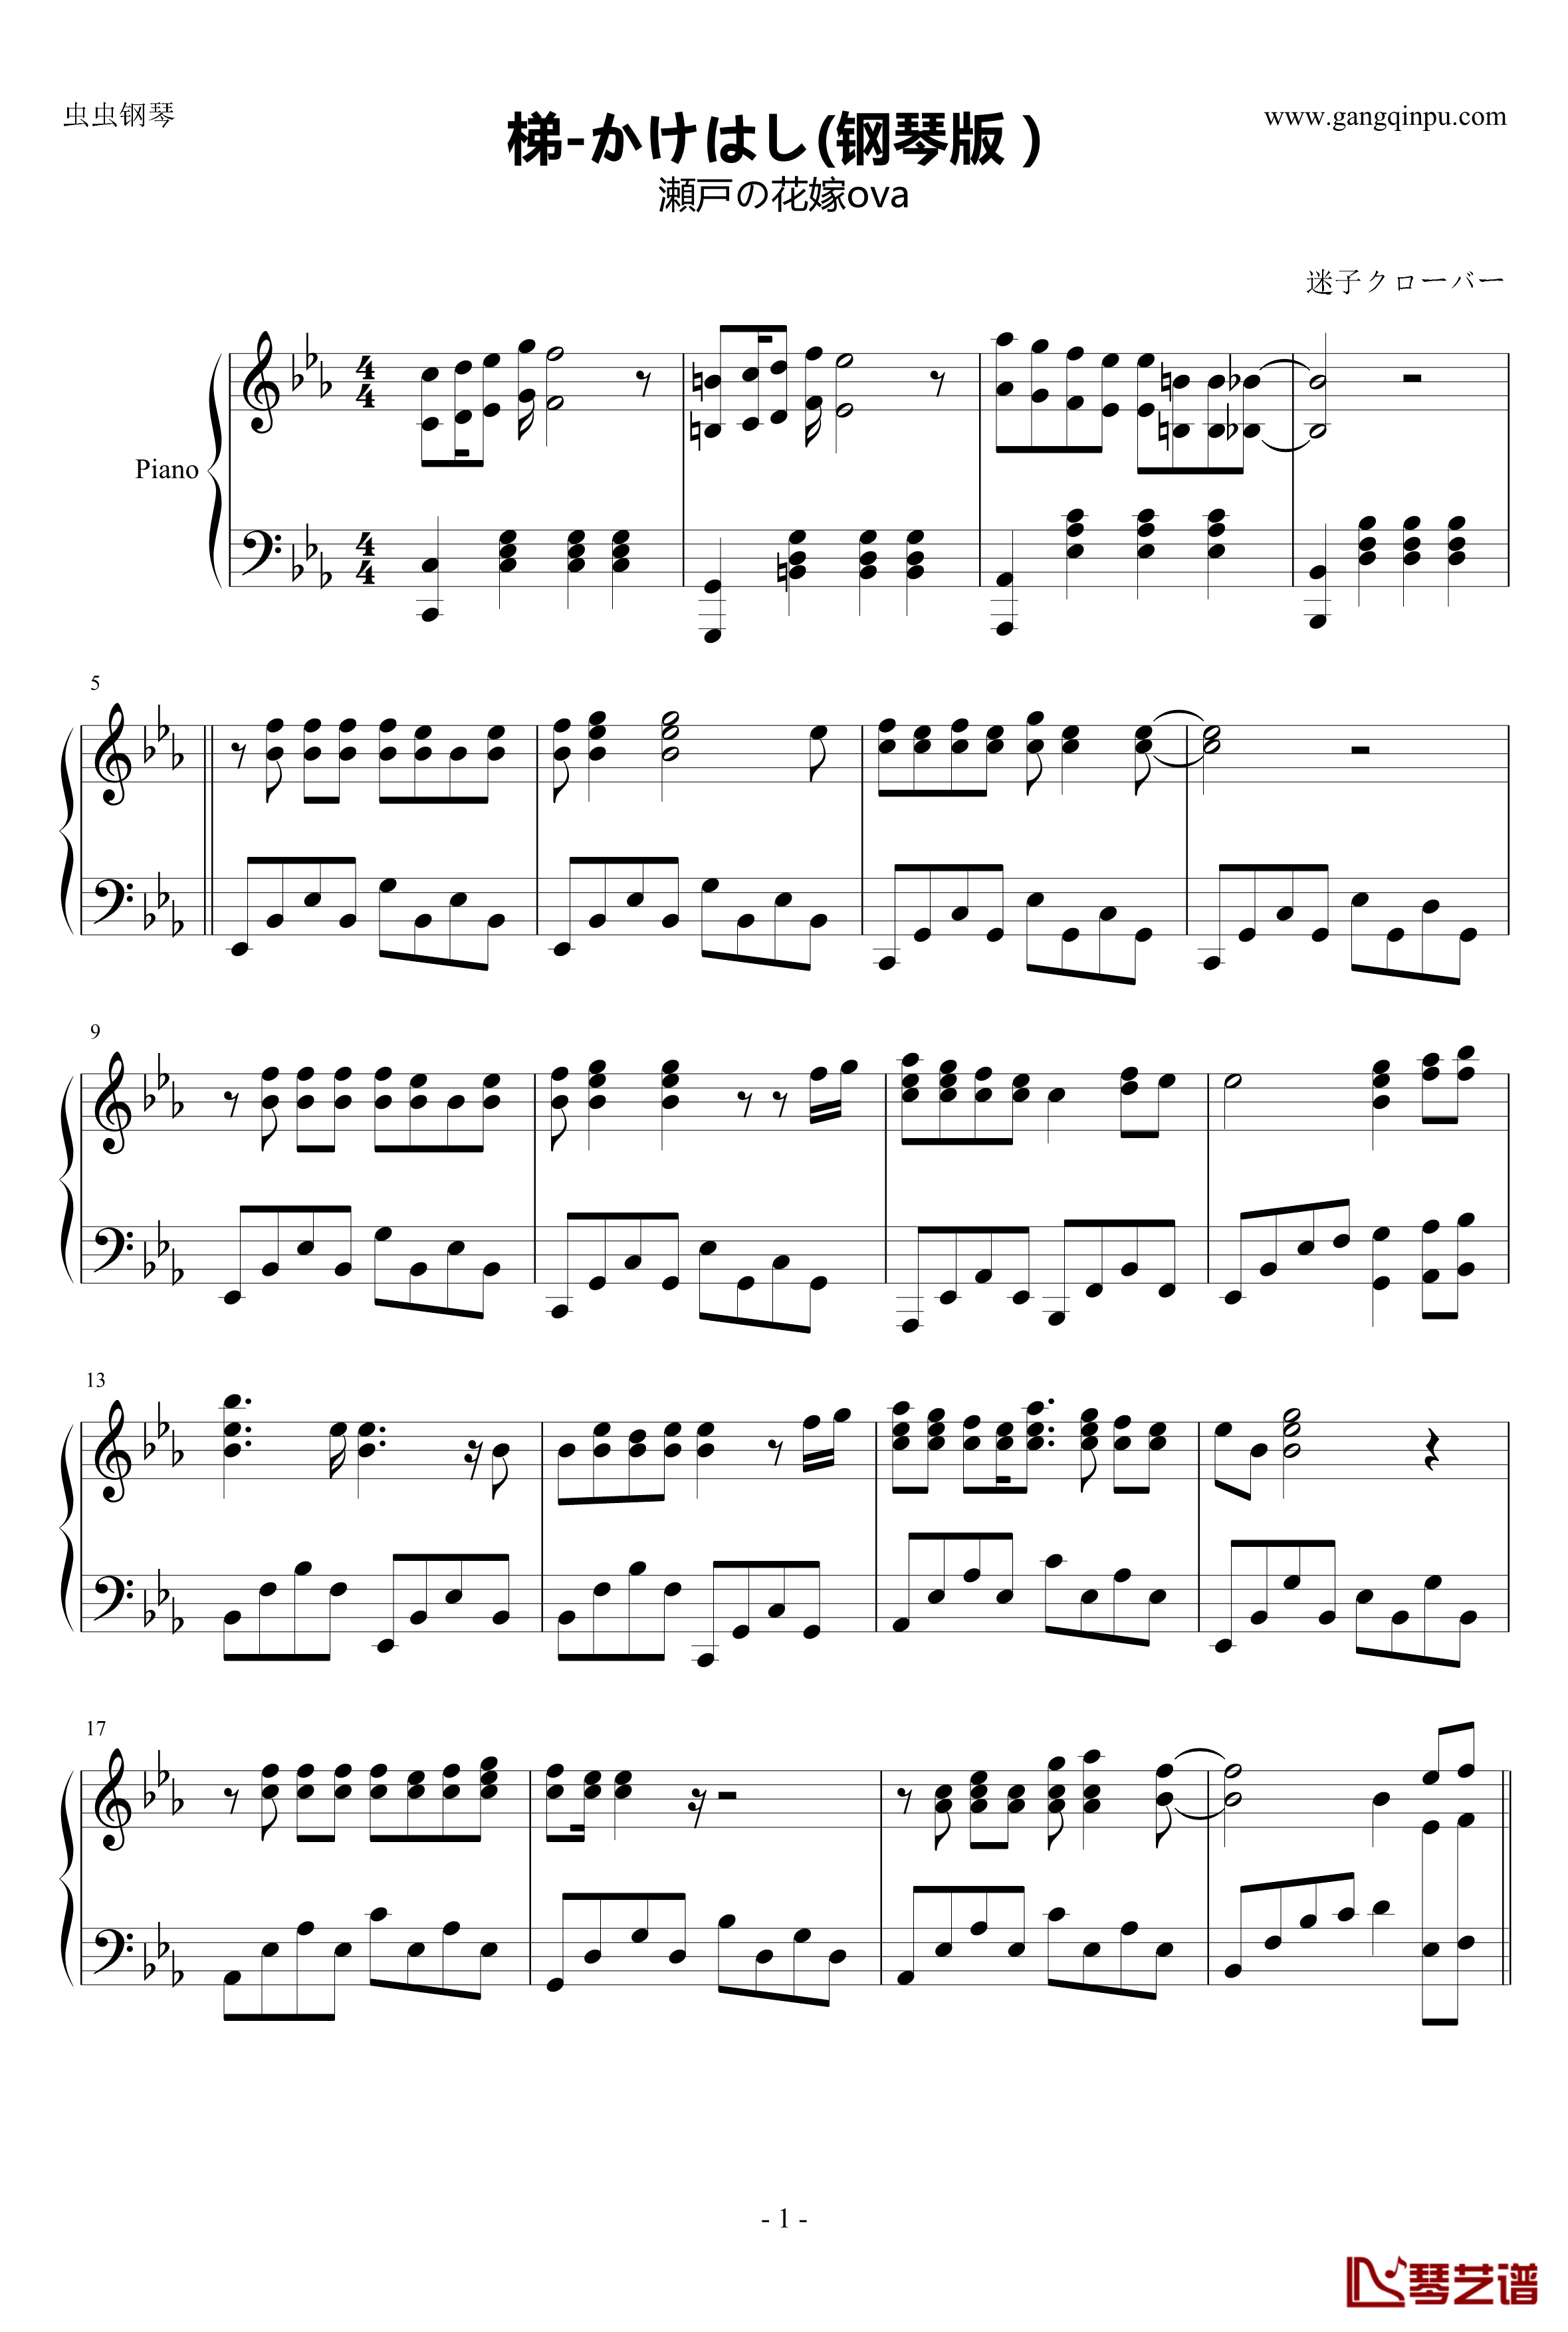 梯钢琴谱-钢琴版-かけはし1